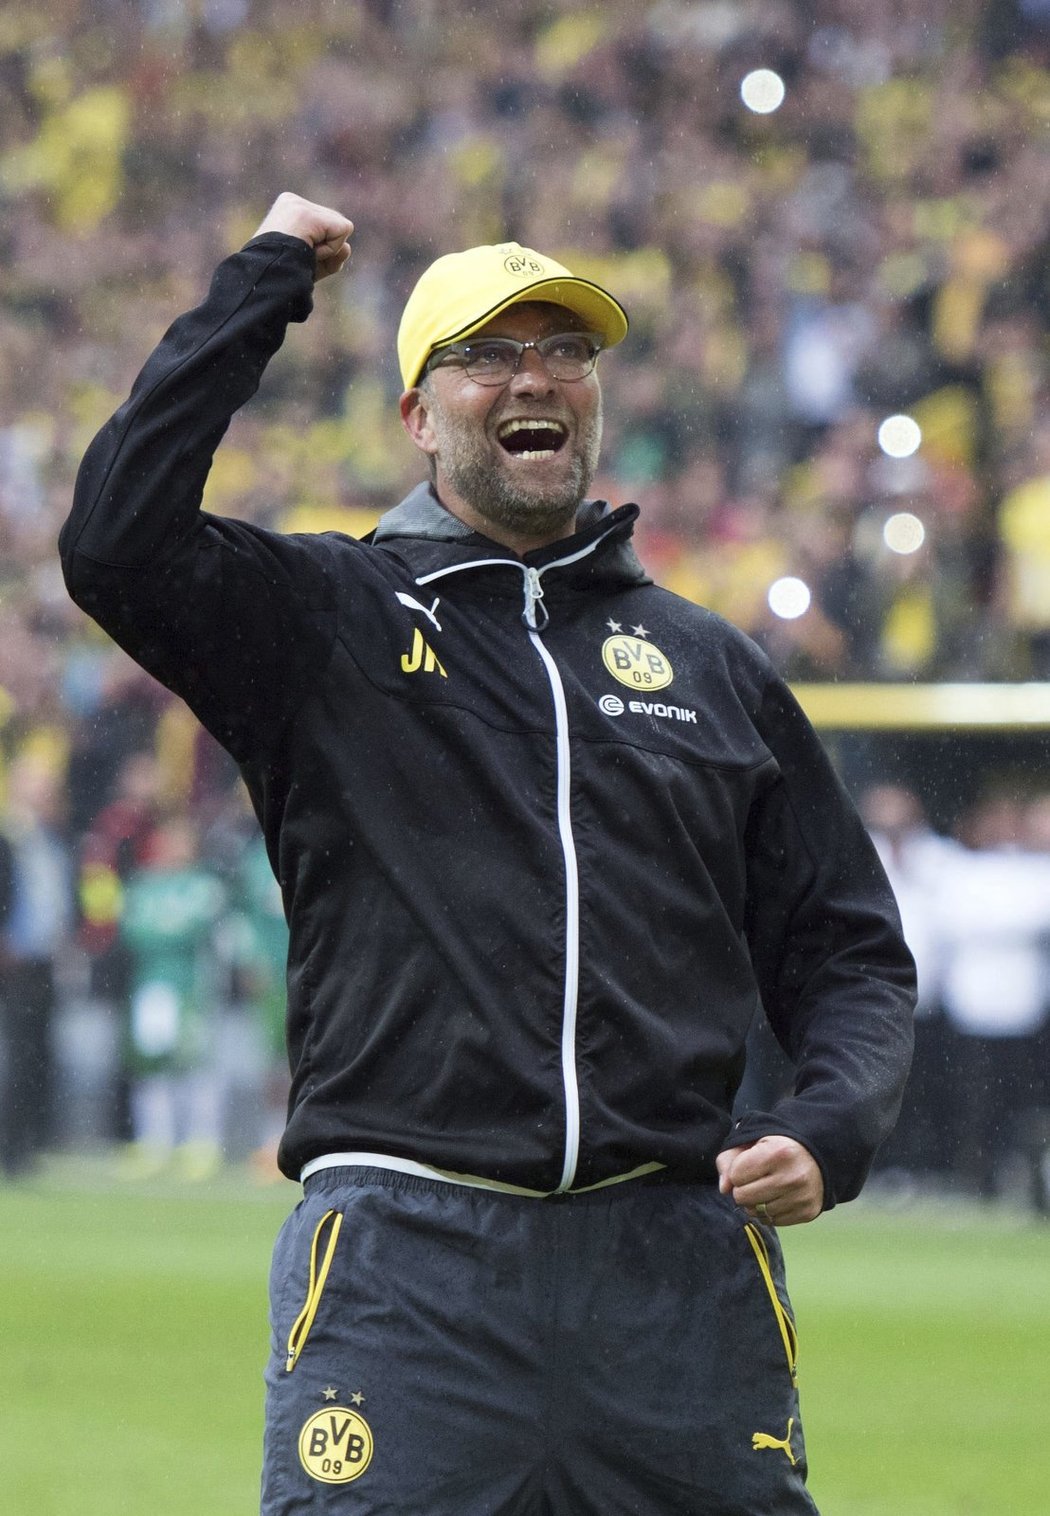 Bouřlivák Jürgen Klopp při rozlučce na lavičce Dortmundu. I poslední zápas byl z jeho strany plný gest a emocí.